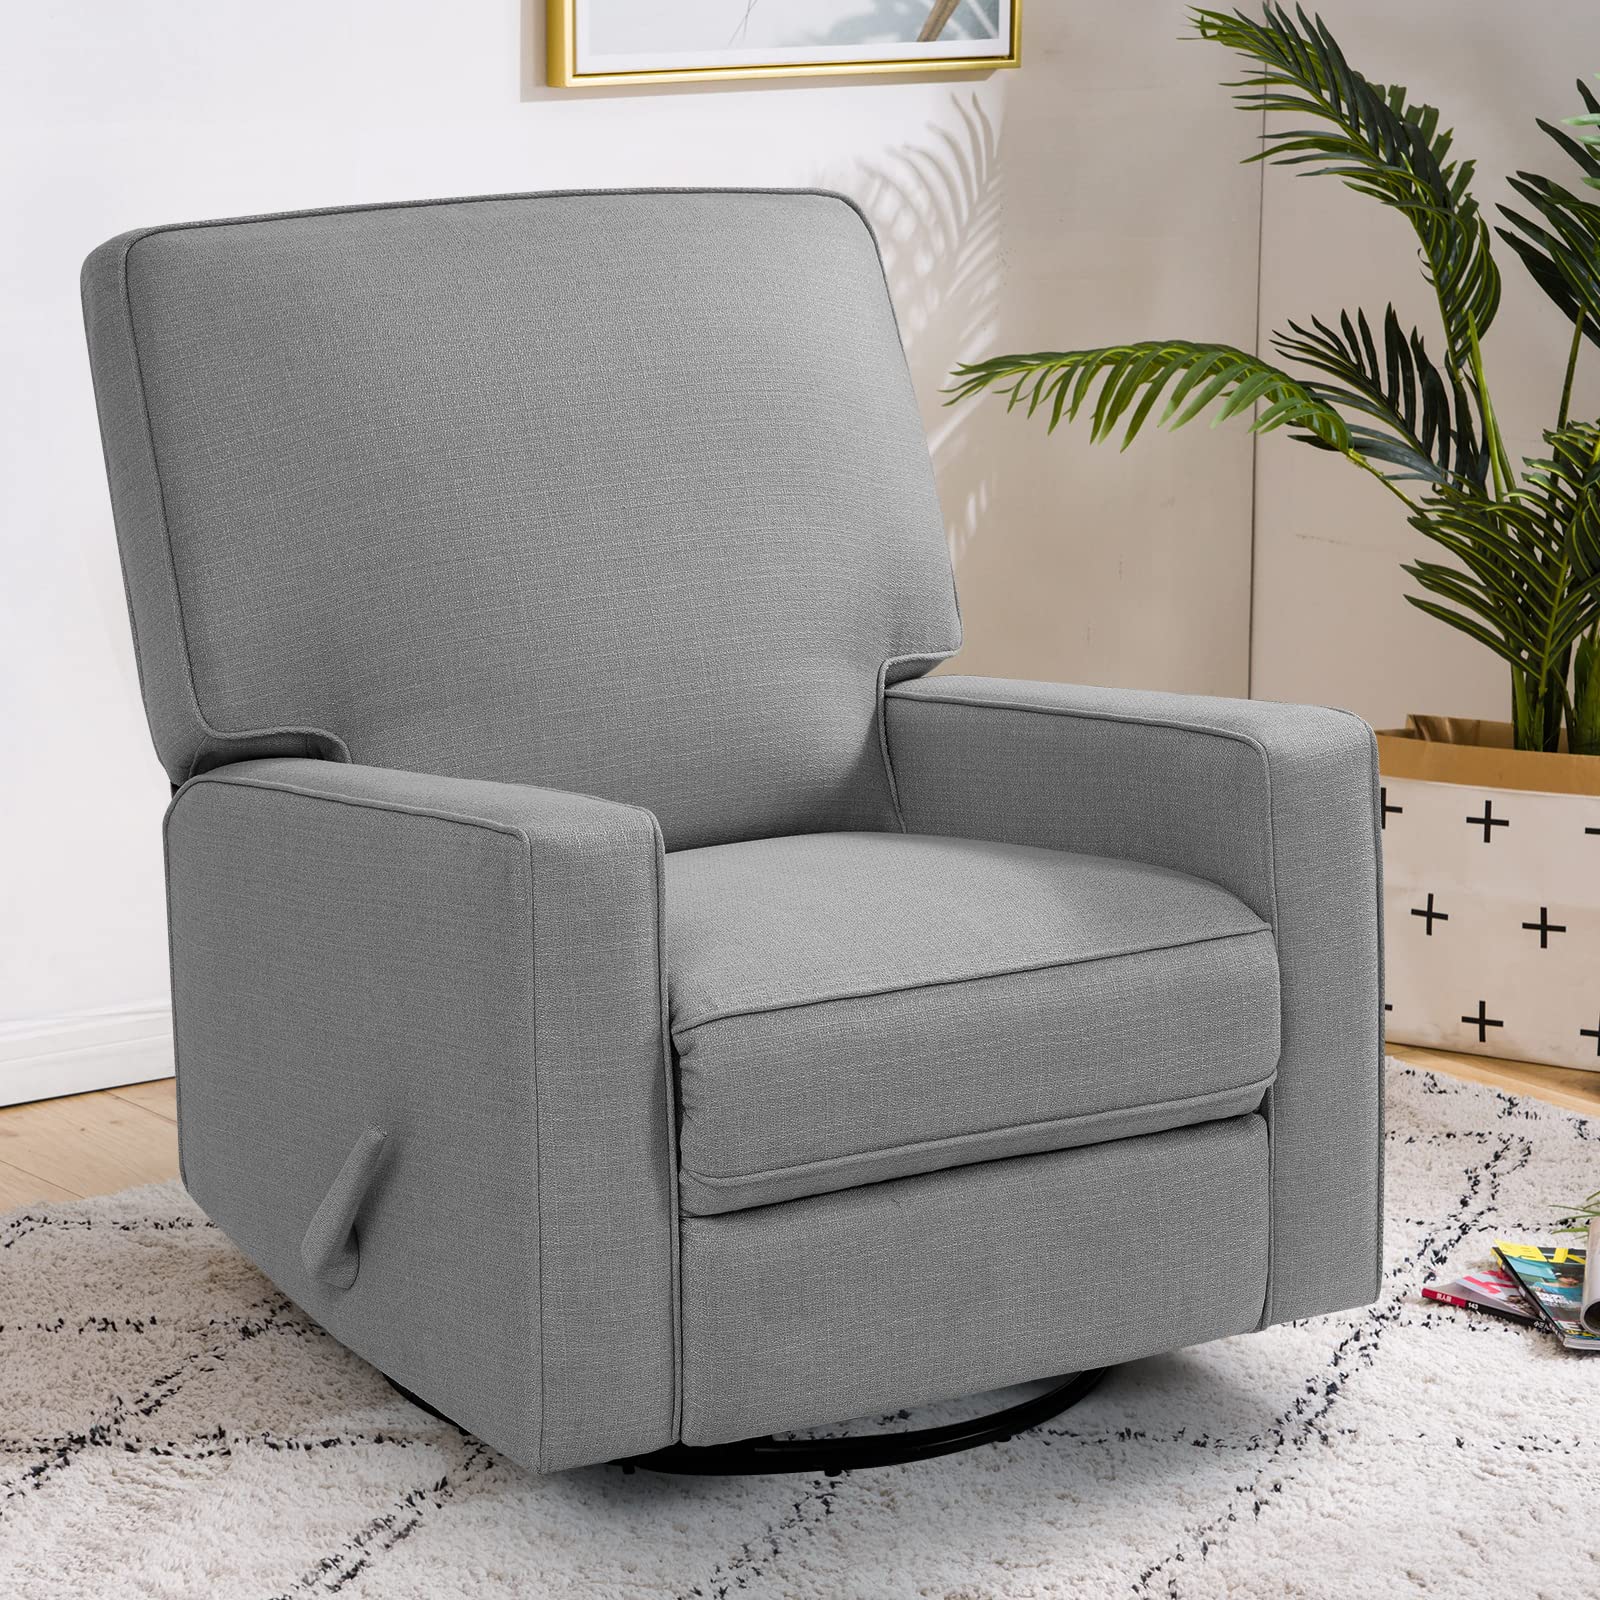 Large Swivel Rocker Nursery Glider Recliner Chair for Living Room